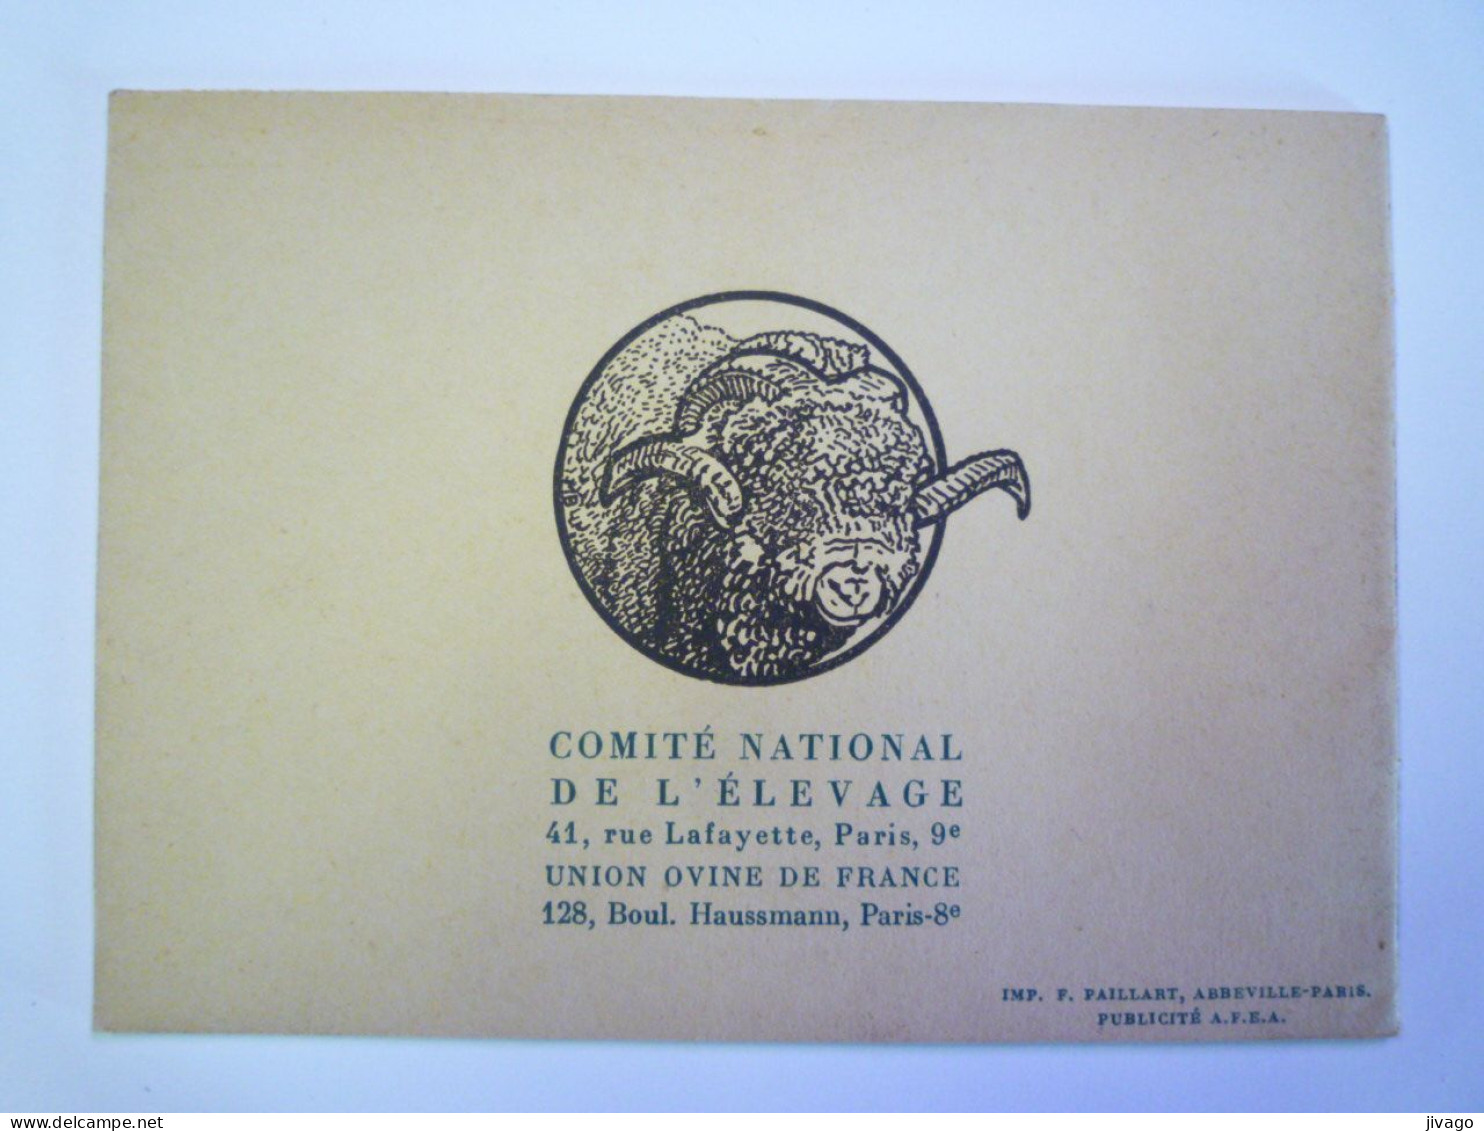 2024 - 1868  " LE CHOIX DU BELIER "  Petite Brochure  PUB   (16 Pages)   XXX - Advertising